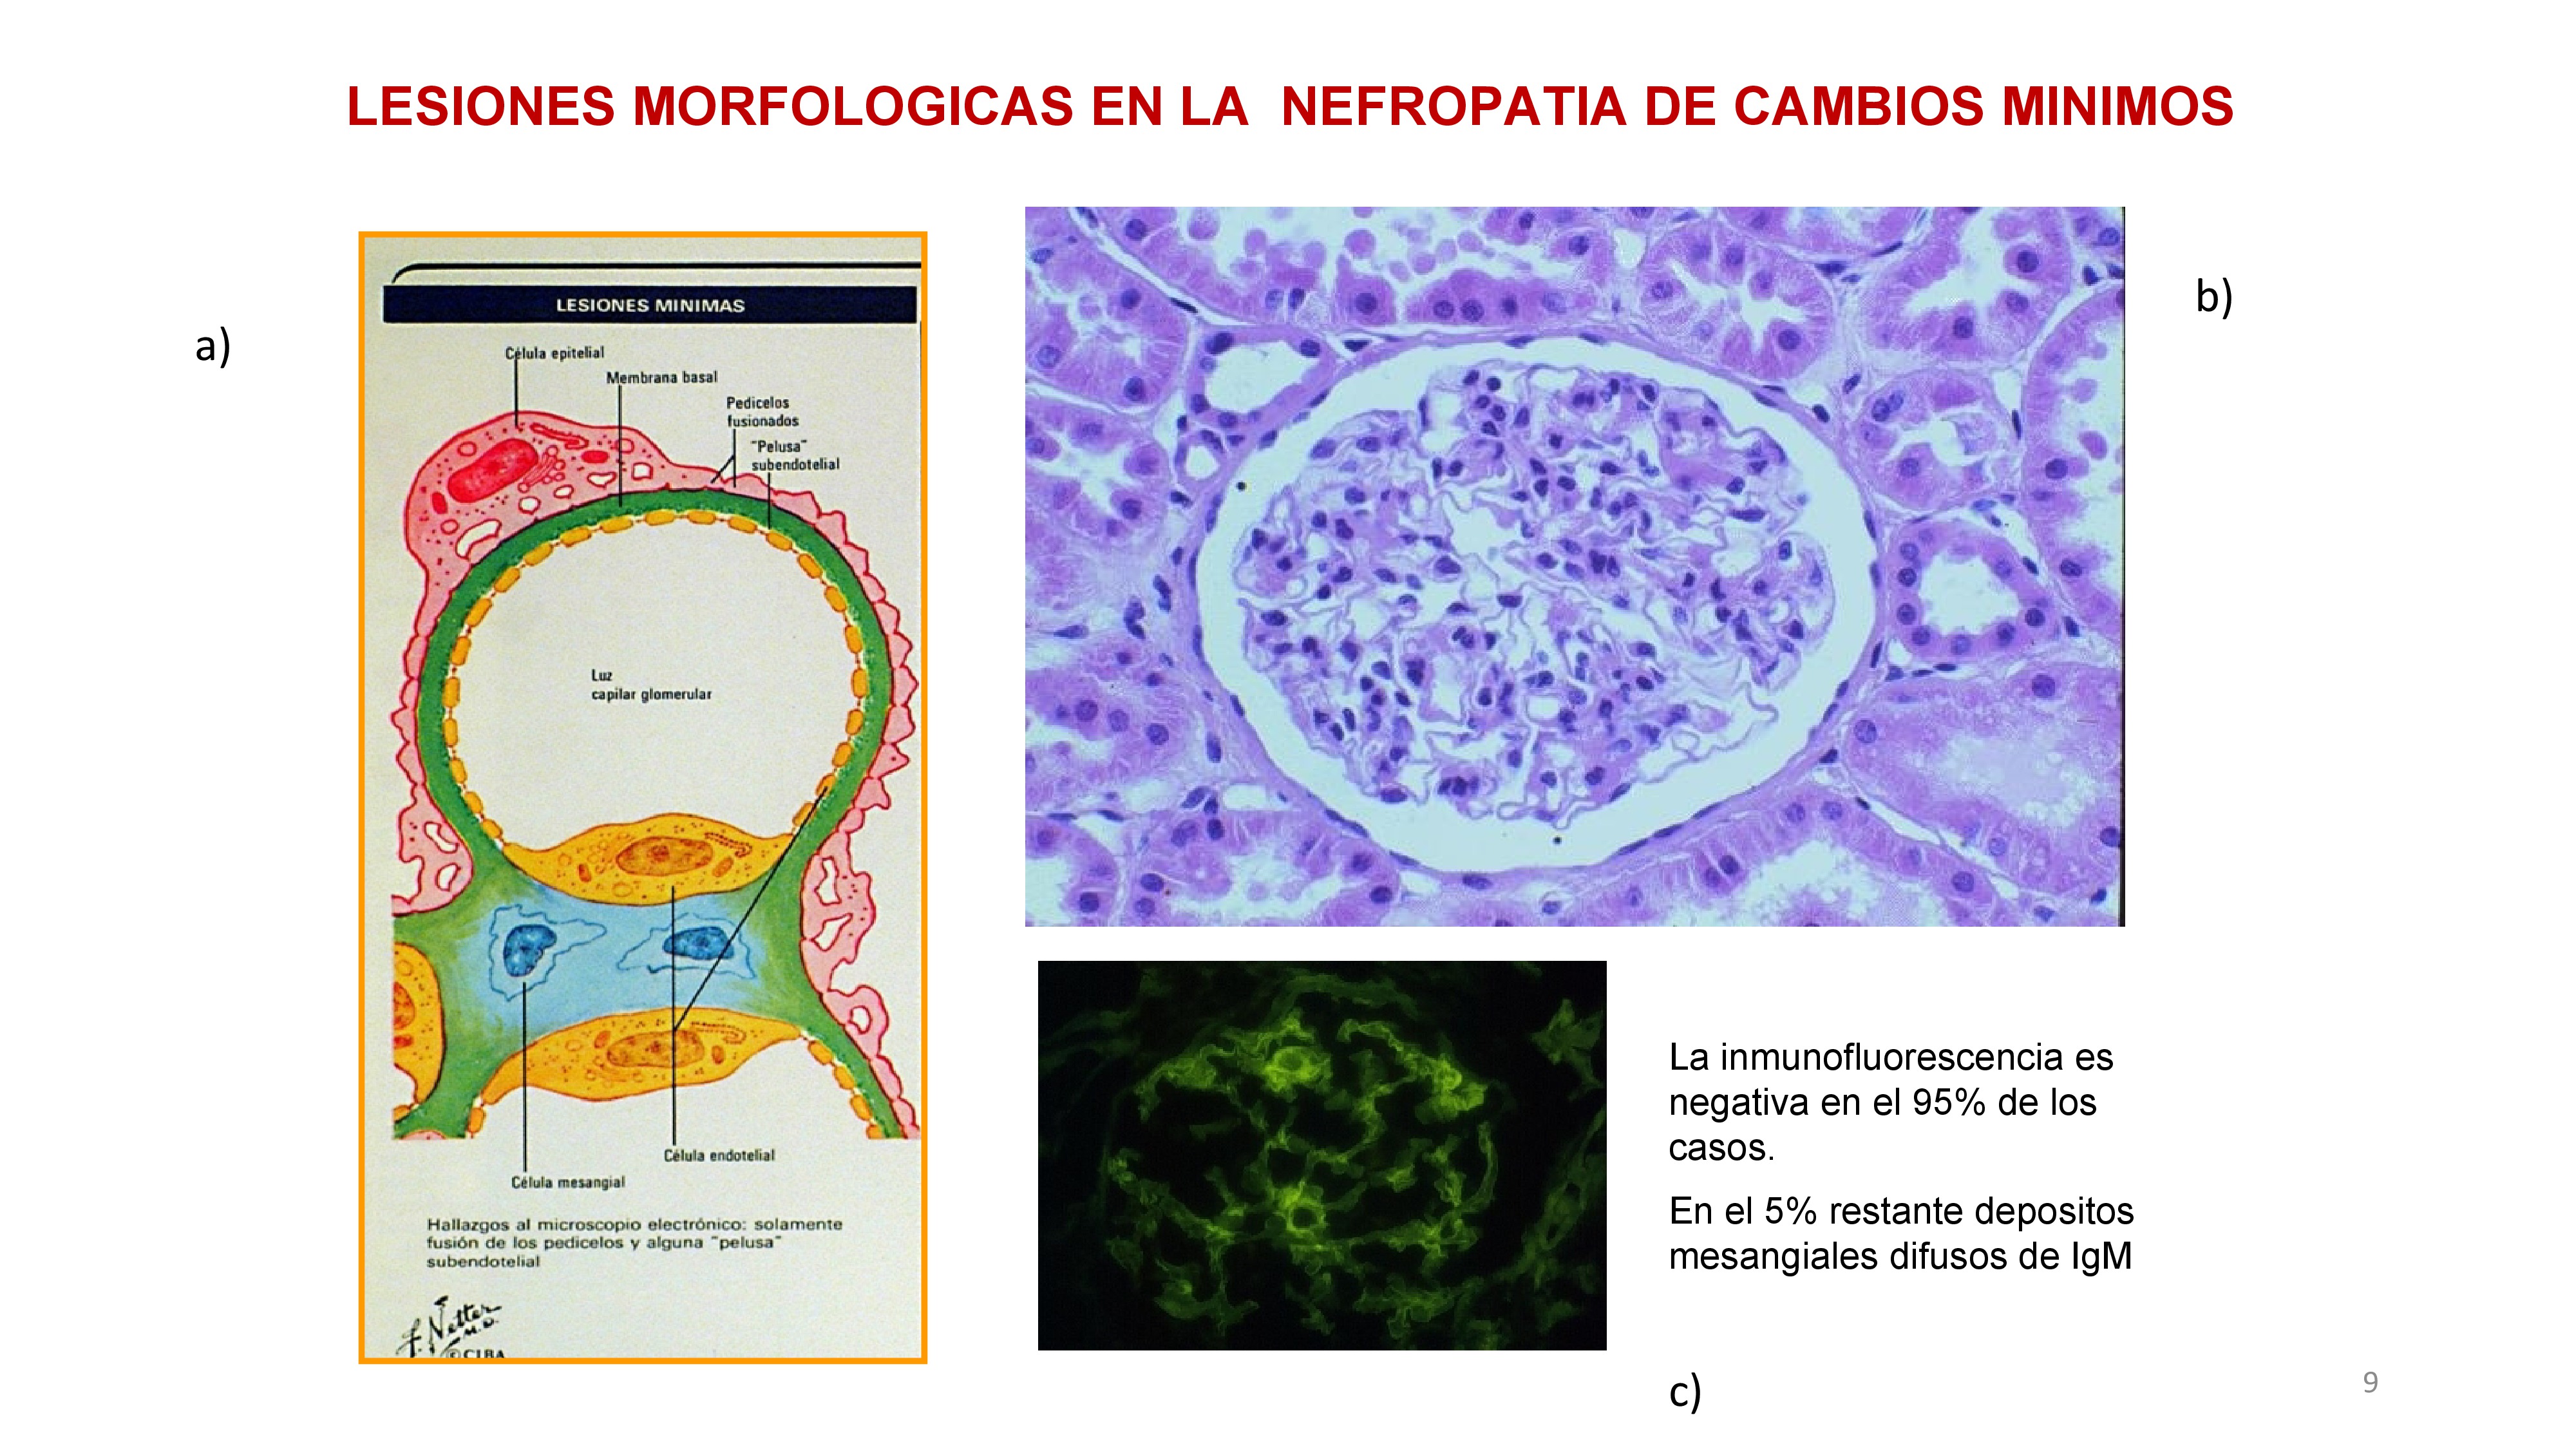 En la biopsia: a) En el dibujo se observa una fusión de pedicelos. B) MO con glomérulo normal. C) Inmunofluorescencia negativa, con un 5% de depósito de IgM.